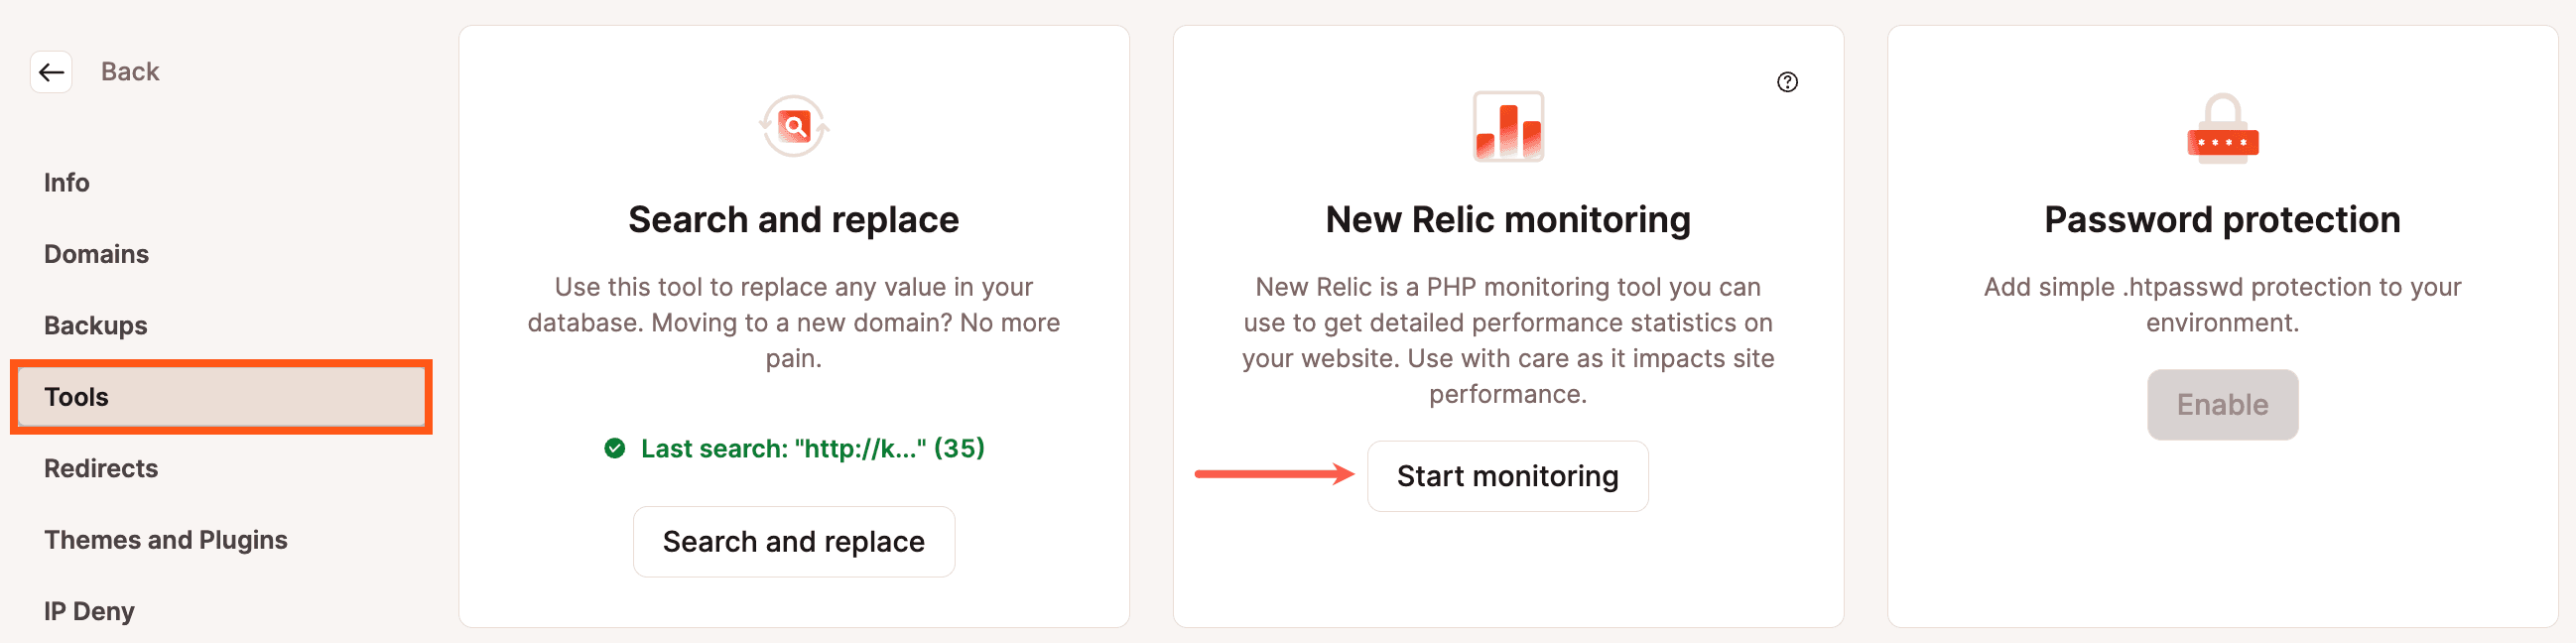 Avviare il monitoraggio di New Relic per WordPress in MyKinsta.